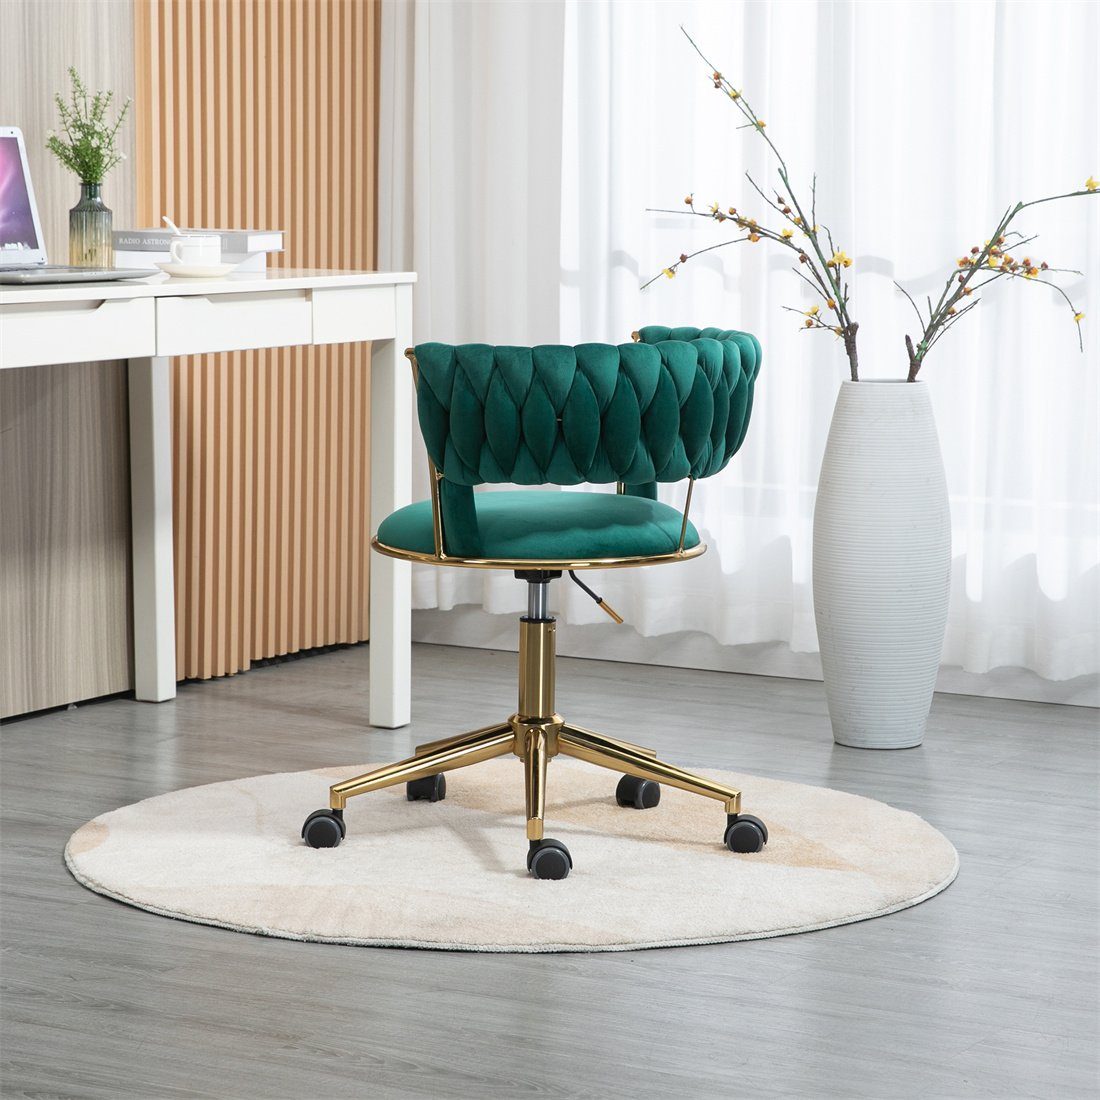 DÖRÖY Drehstuhl Home Computerstuhl,grün Chair,Kosmetikstuhl,Verstellbarer Office